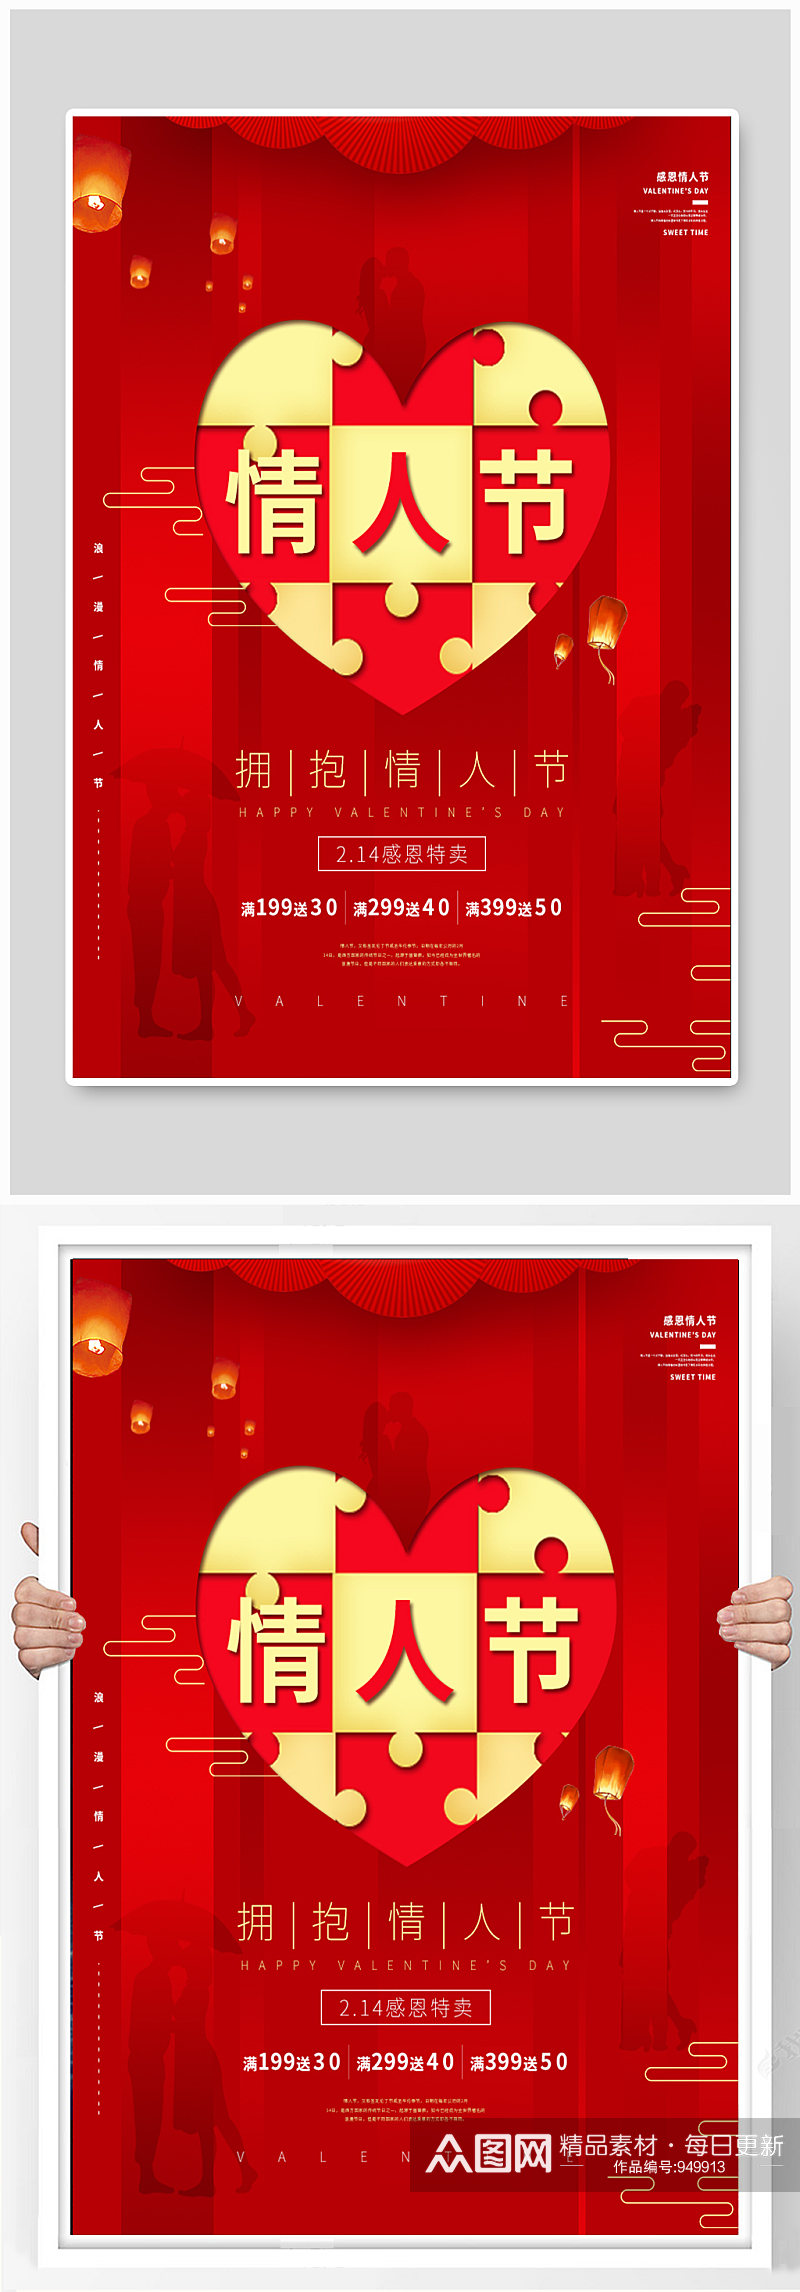 情人节促销节日宣传海报素材